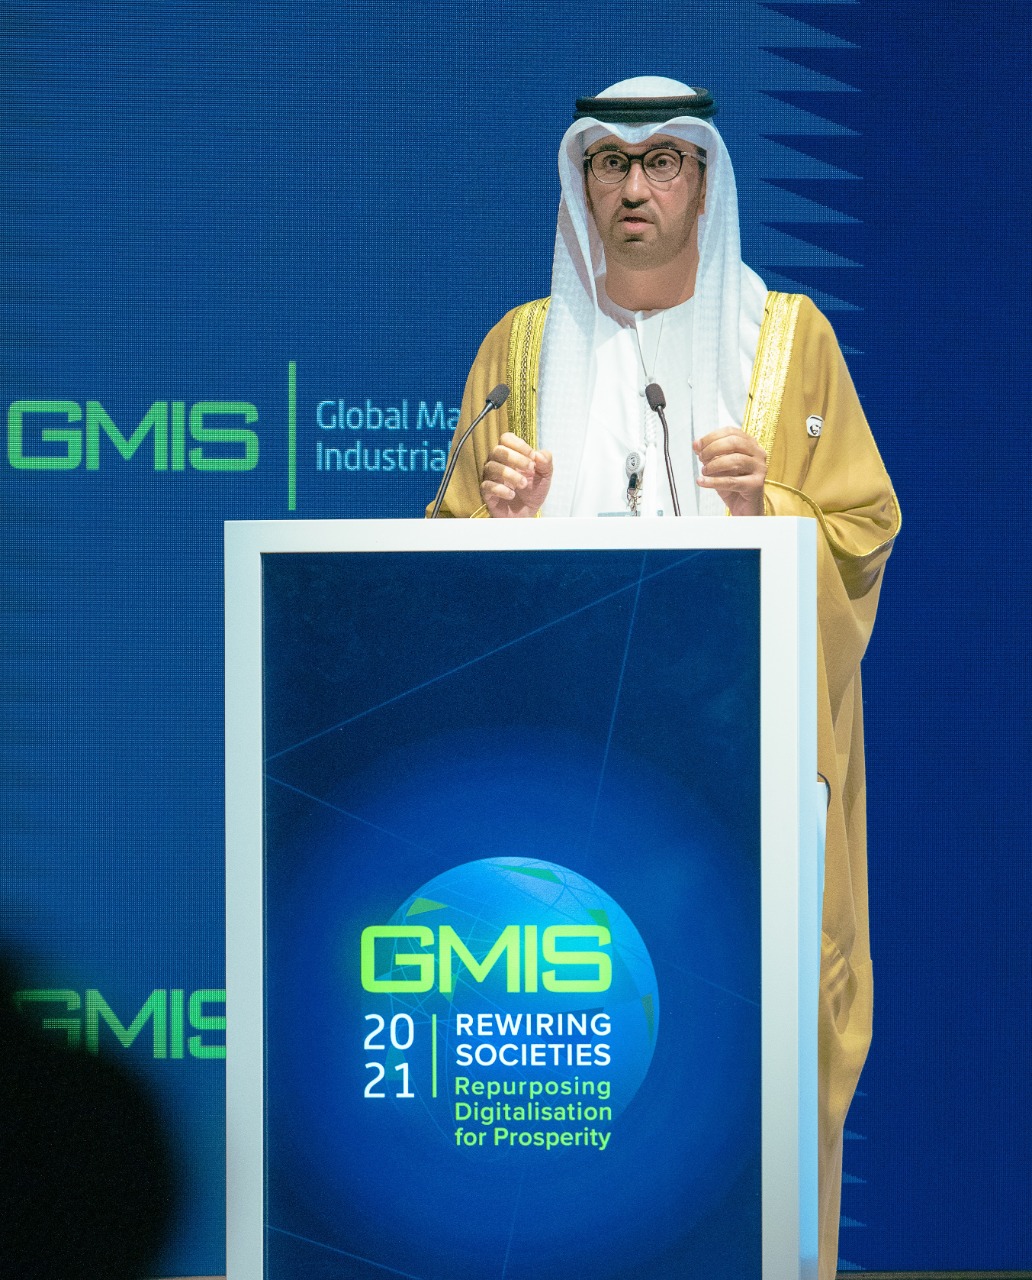 سلطان الجابر وزير الصناعة والتكنولوجيا الإماراتى بافتتاح القمة العالمية للصناعة (2)